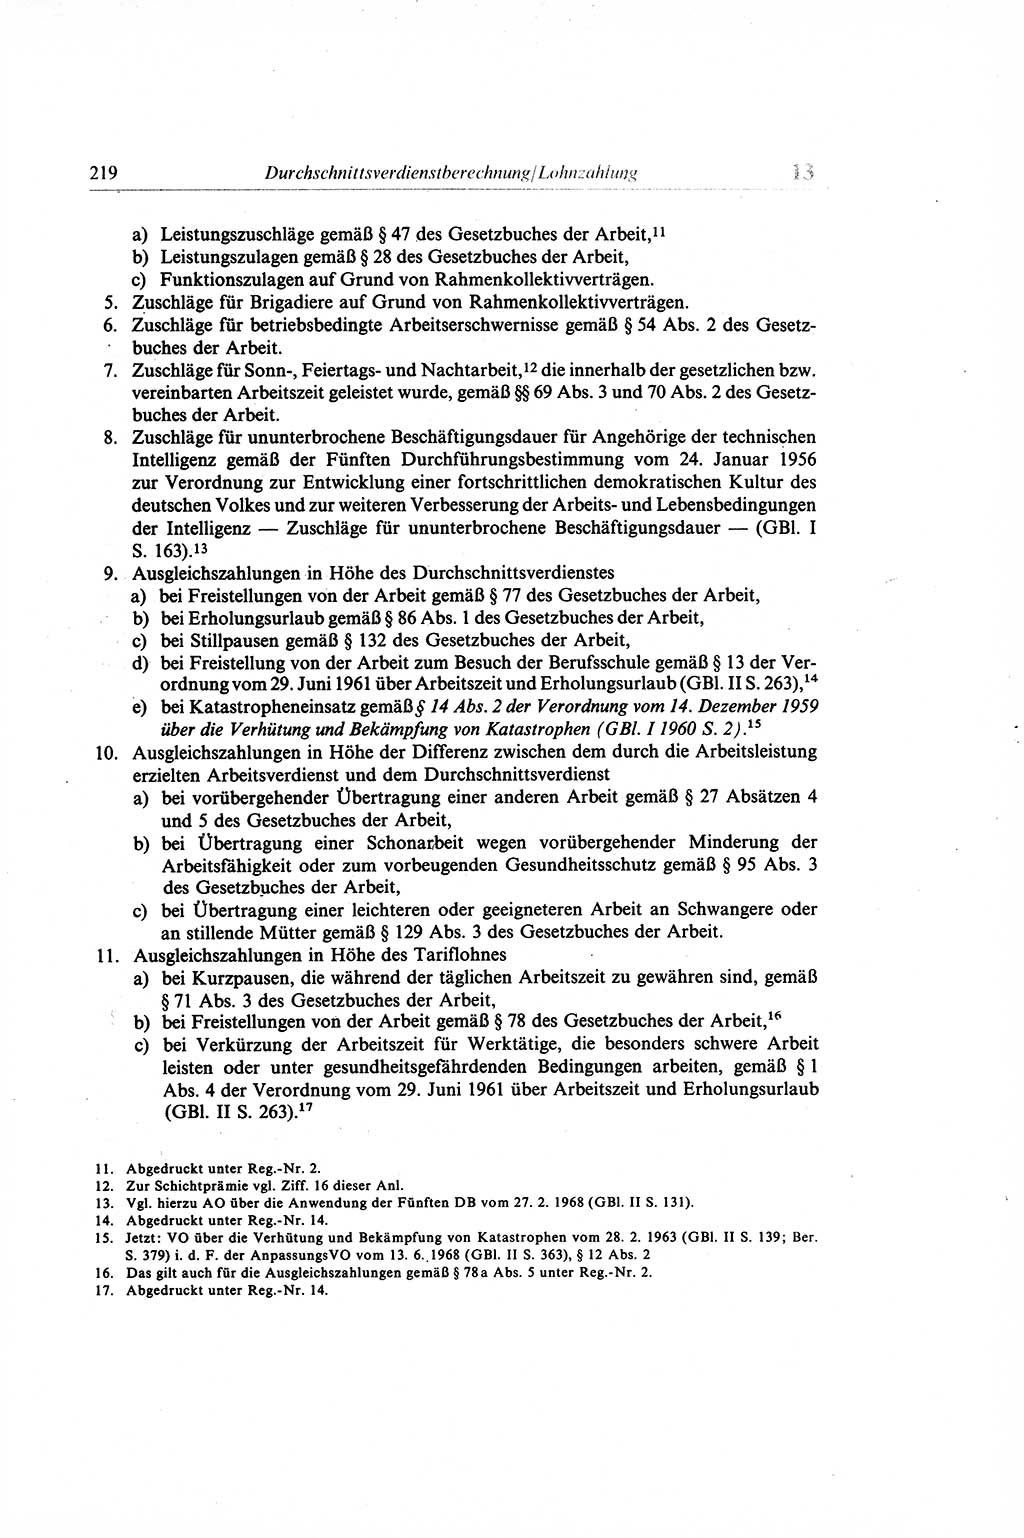 Gesetzbuch der Arbeit (GBA) und andere ausgewählte rechtliche Bestimmungen [Deutsche Demokratische Republik (DDR)] 1968, Seite 219 (GBA DDR 1968, S. 219)